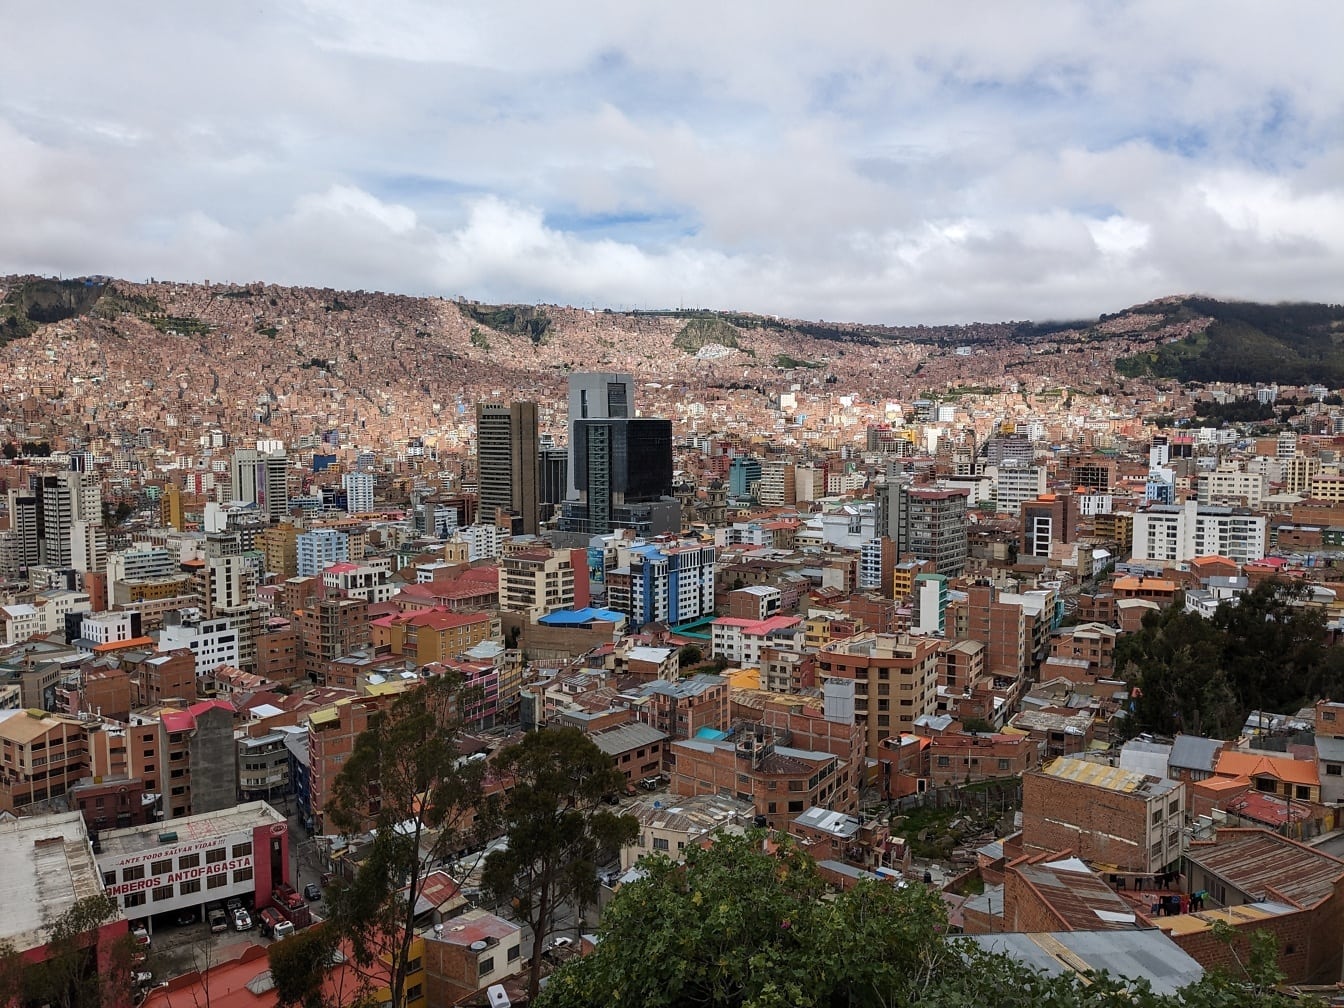 Panoramatická panoráma mesta Mirador Killi Killi s mestom La Paz v Bolívii s mnohými budovami